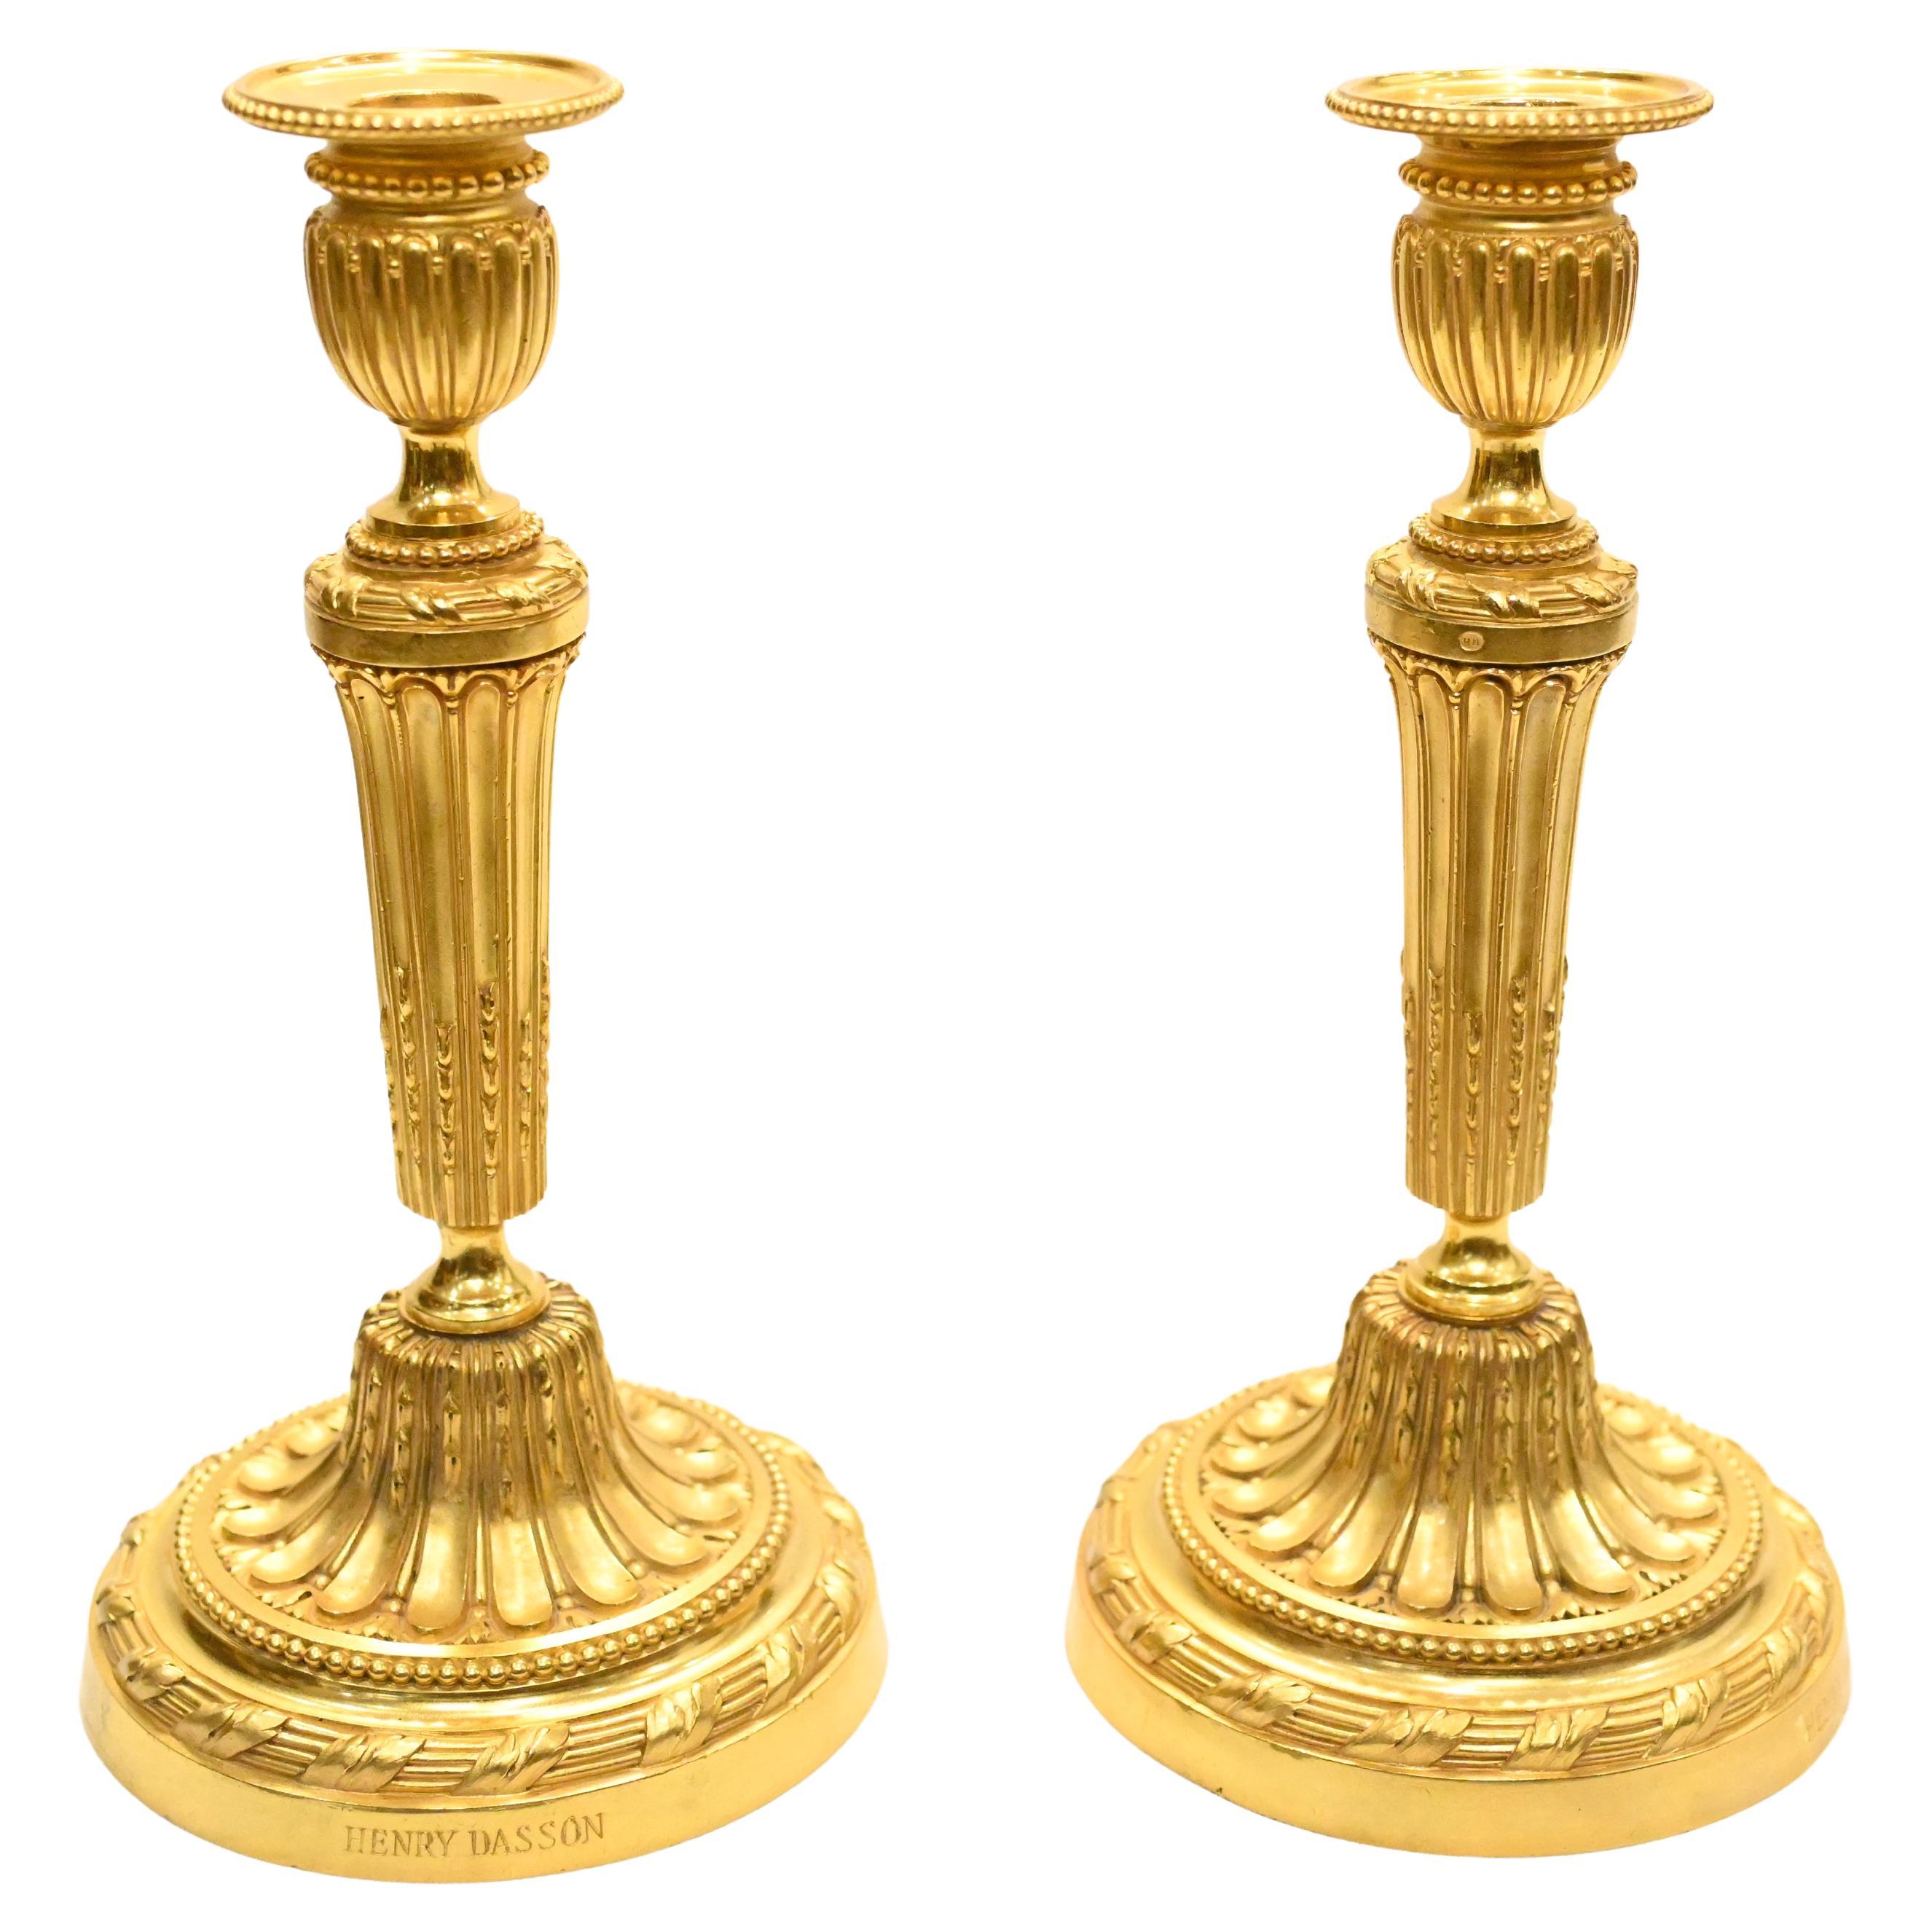 Paire de chandeliers en bronze doré signés Henry Dasson, 1880